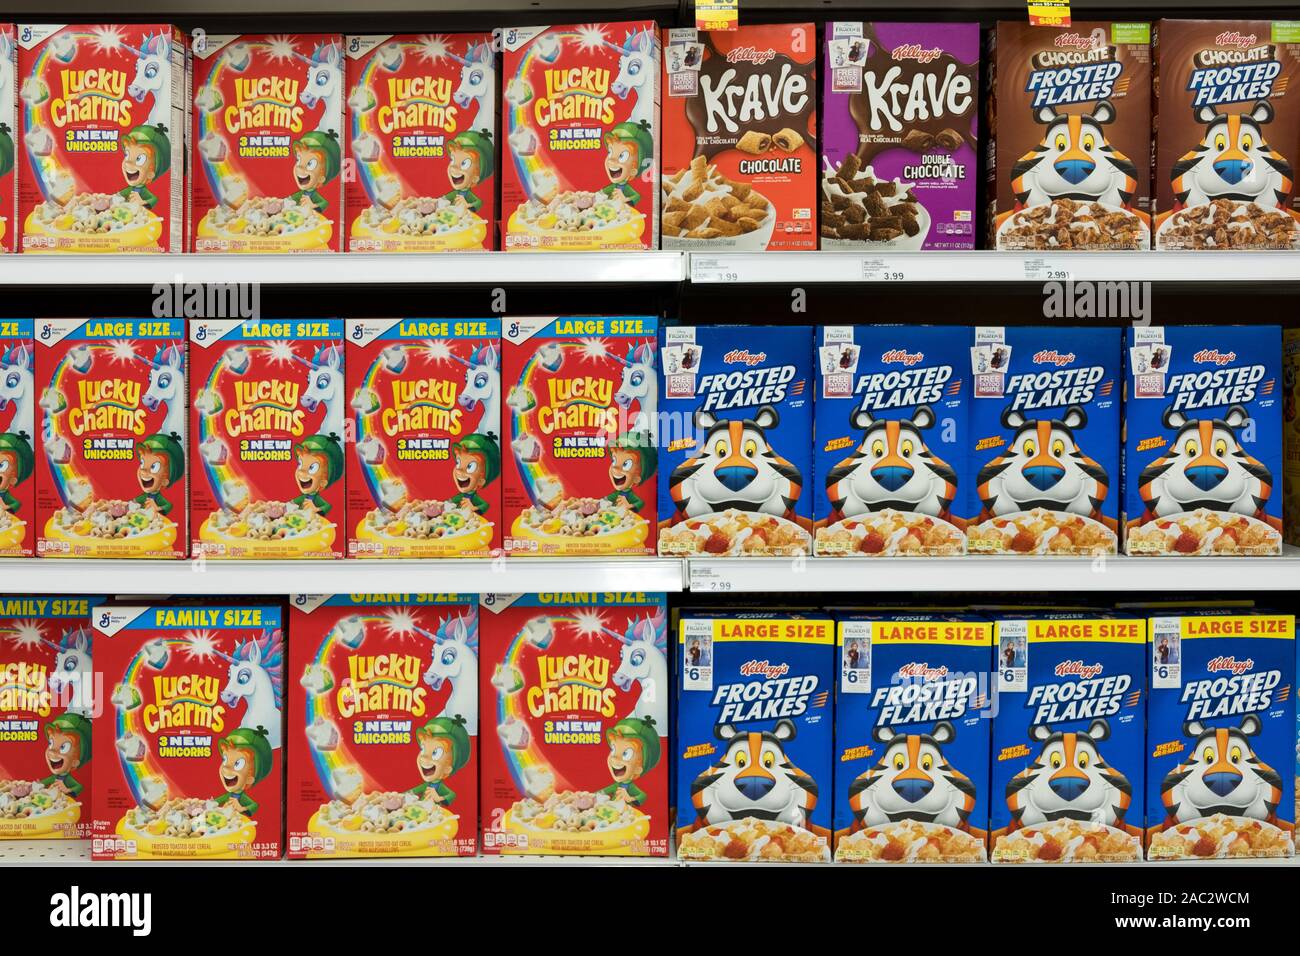 Lebensmittelgeschäft Regal mit Boxen von verschiedene Marken von  Frühstückszerealien Stockfotografie - Alamy